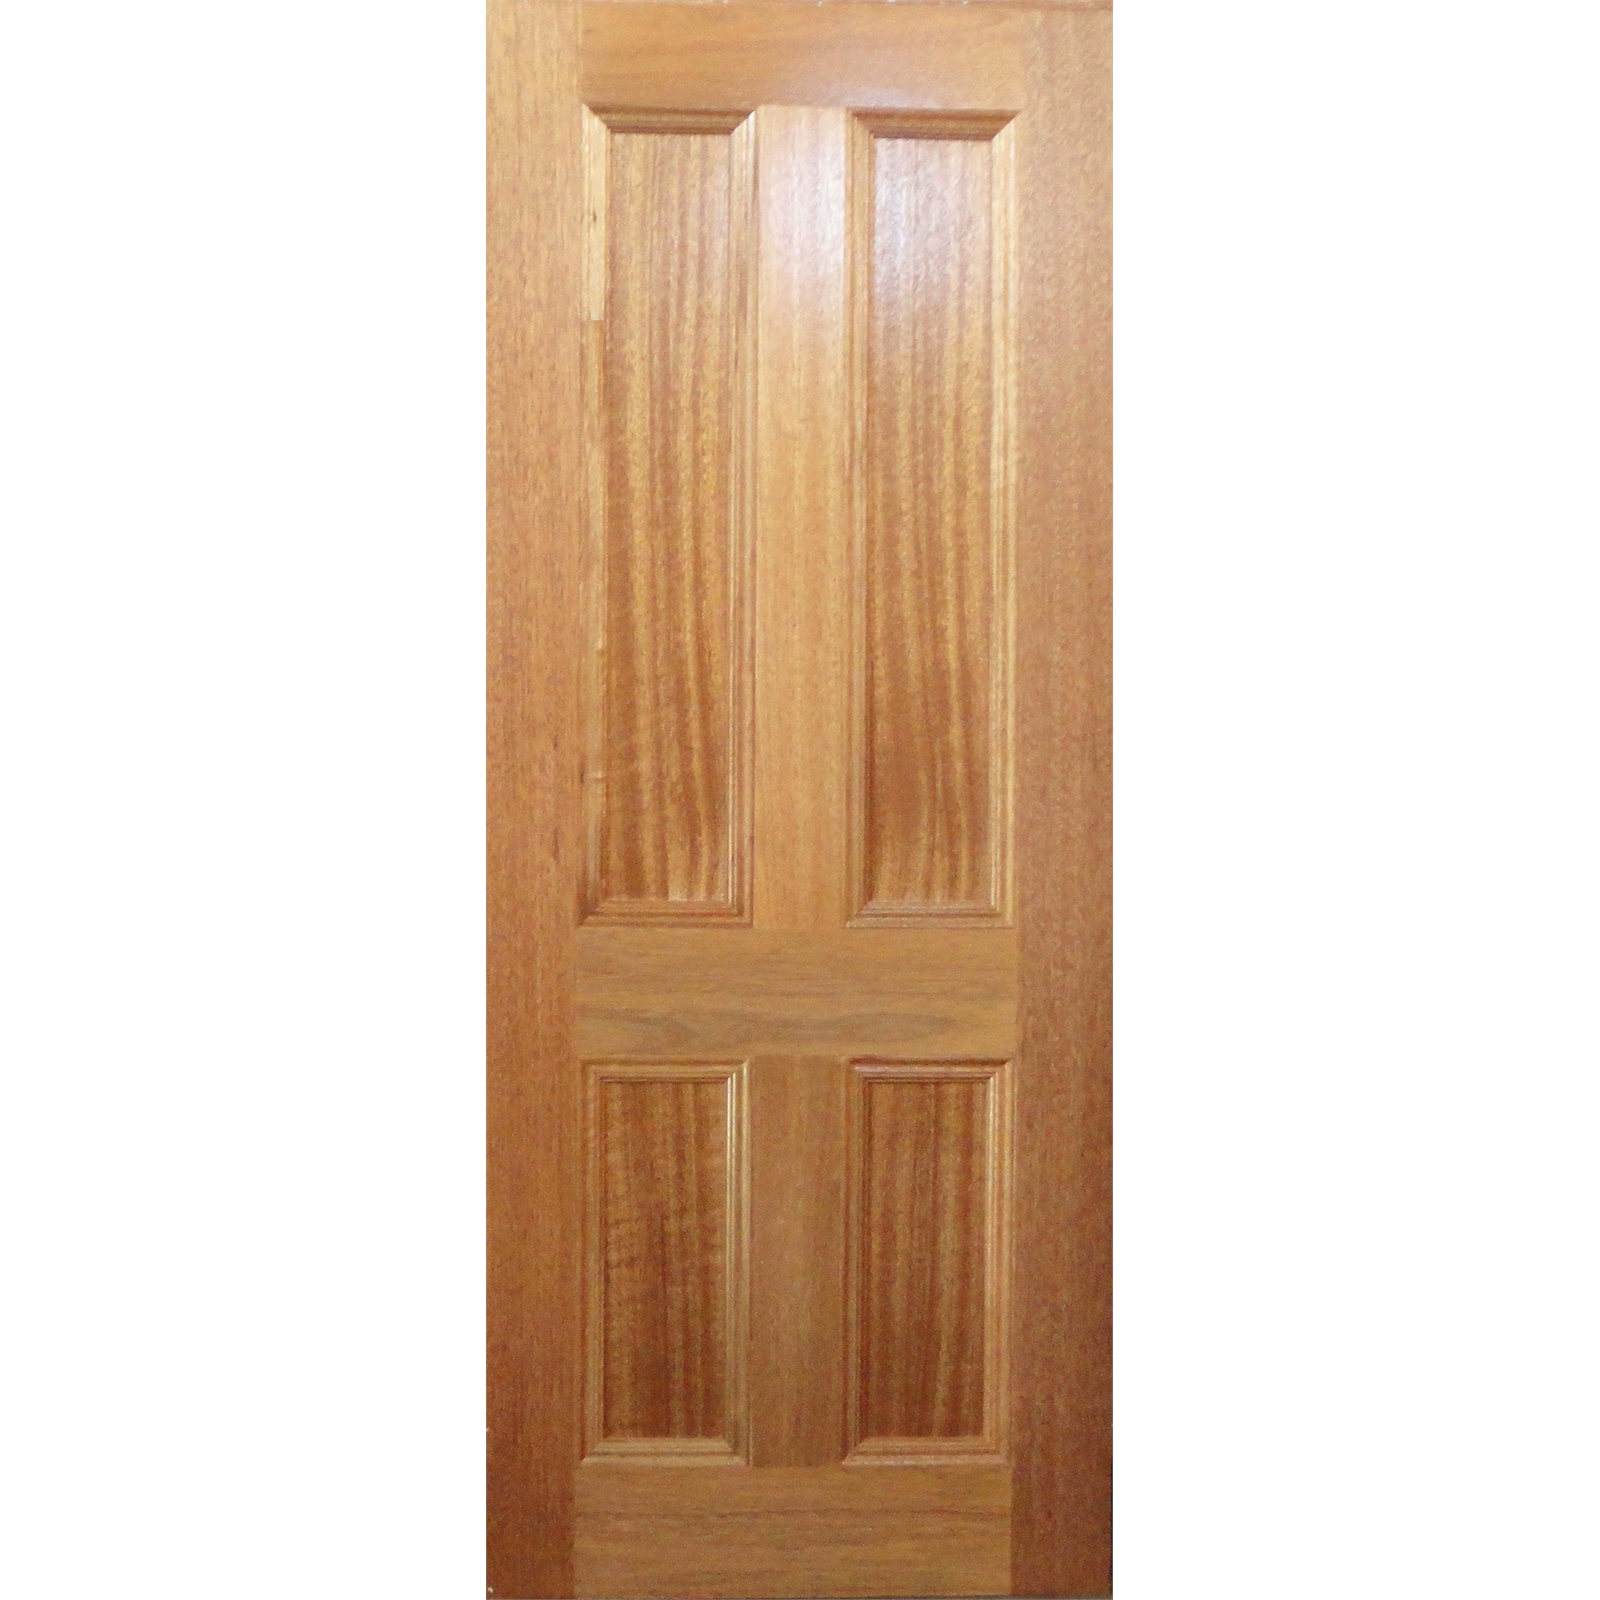 Woodcraft Doors 2040 x 720 x 35mm Maple Victorian Internal Door